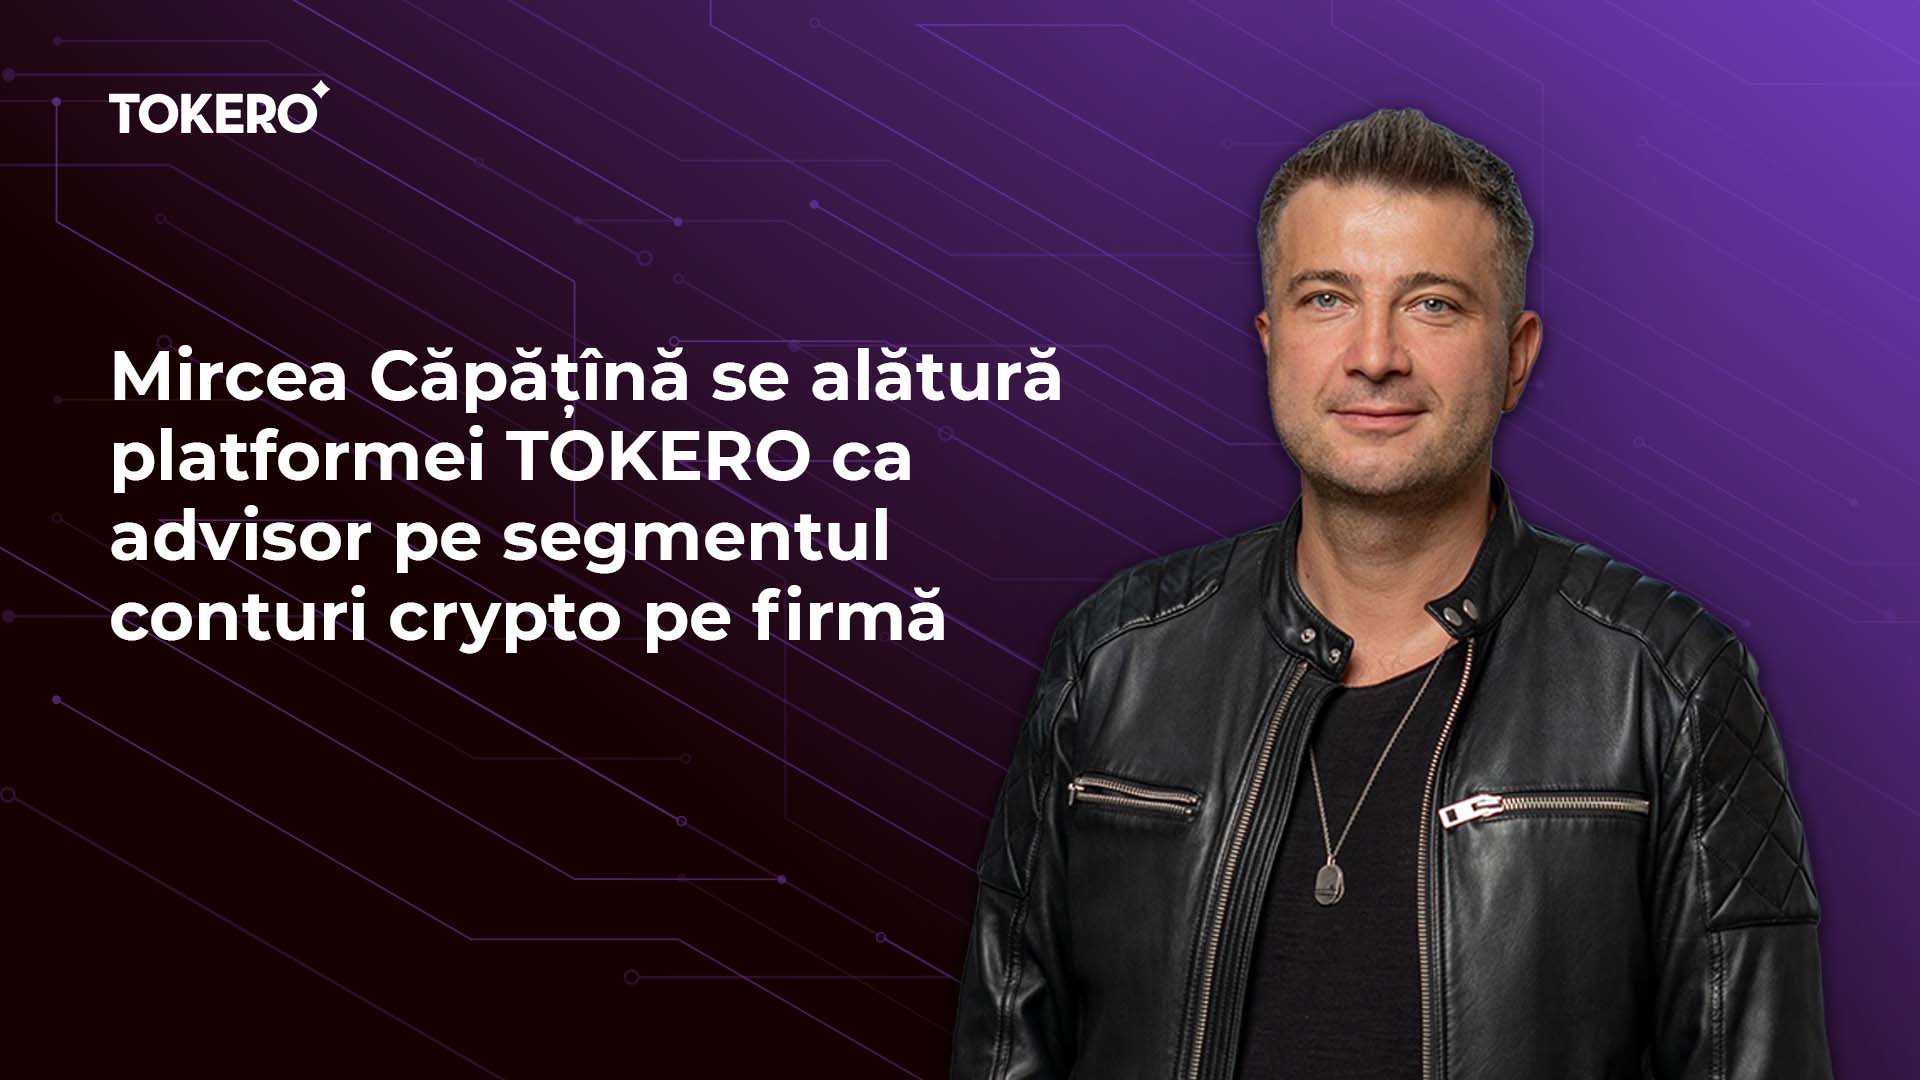 Mircea Căpățînă se alătură platformei TOKERO ca advisor pe segmentul conturi crypto pe firmă